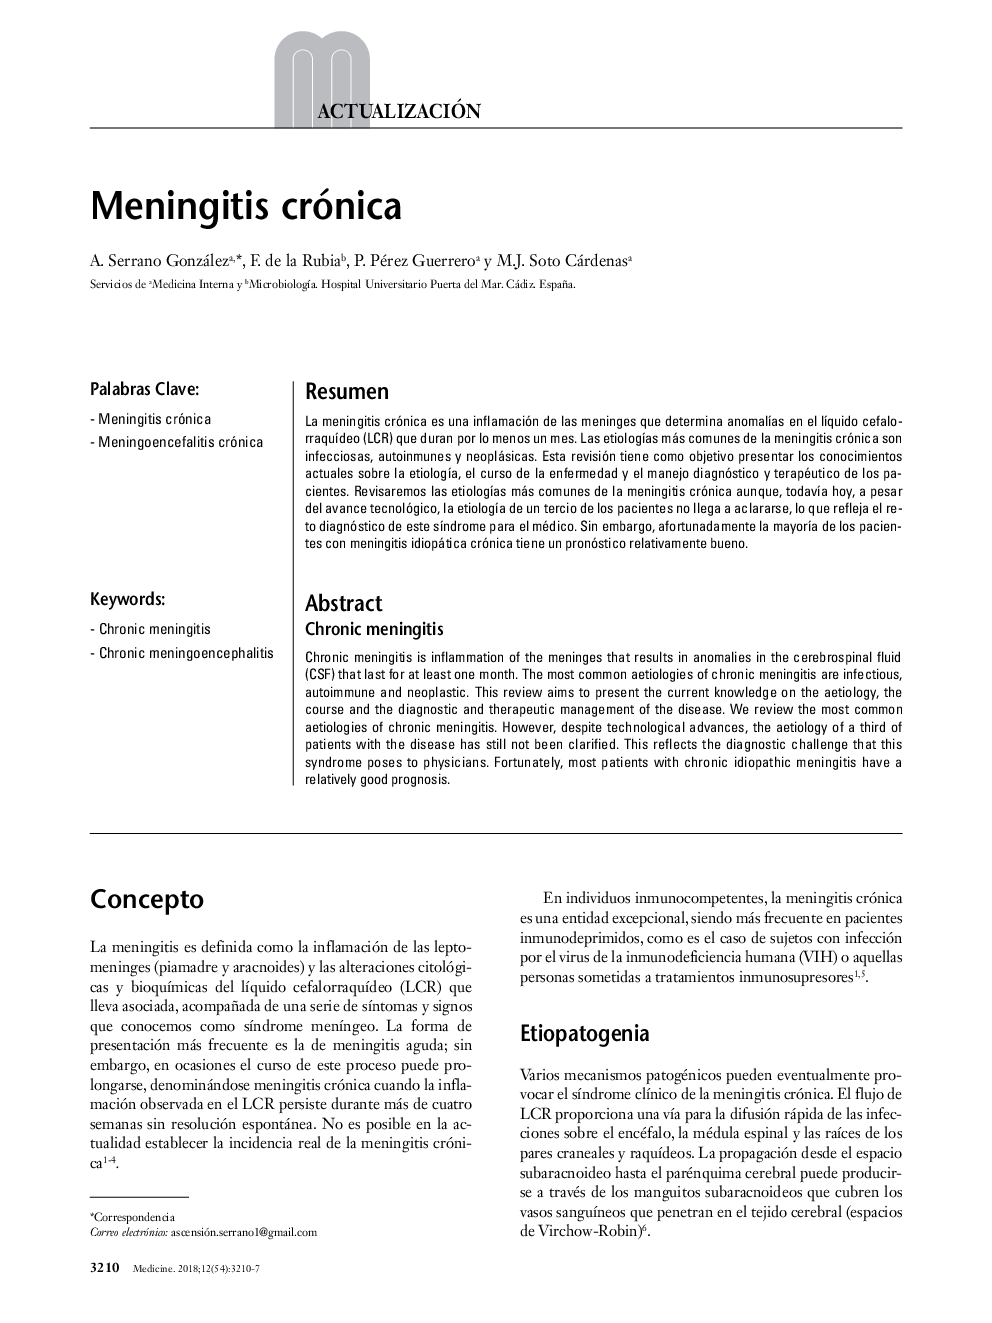 Meningitis crónica